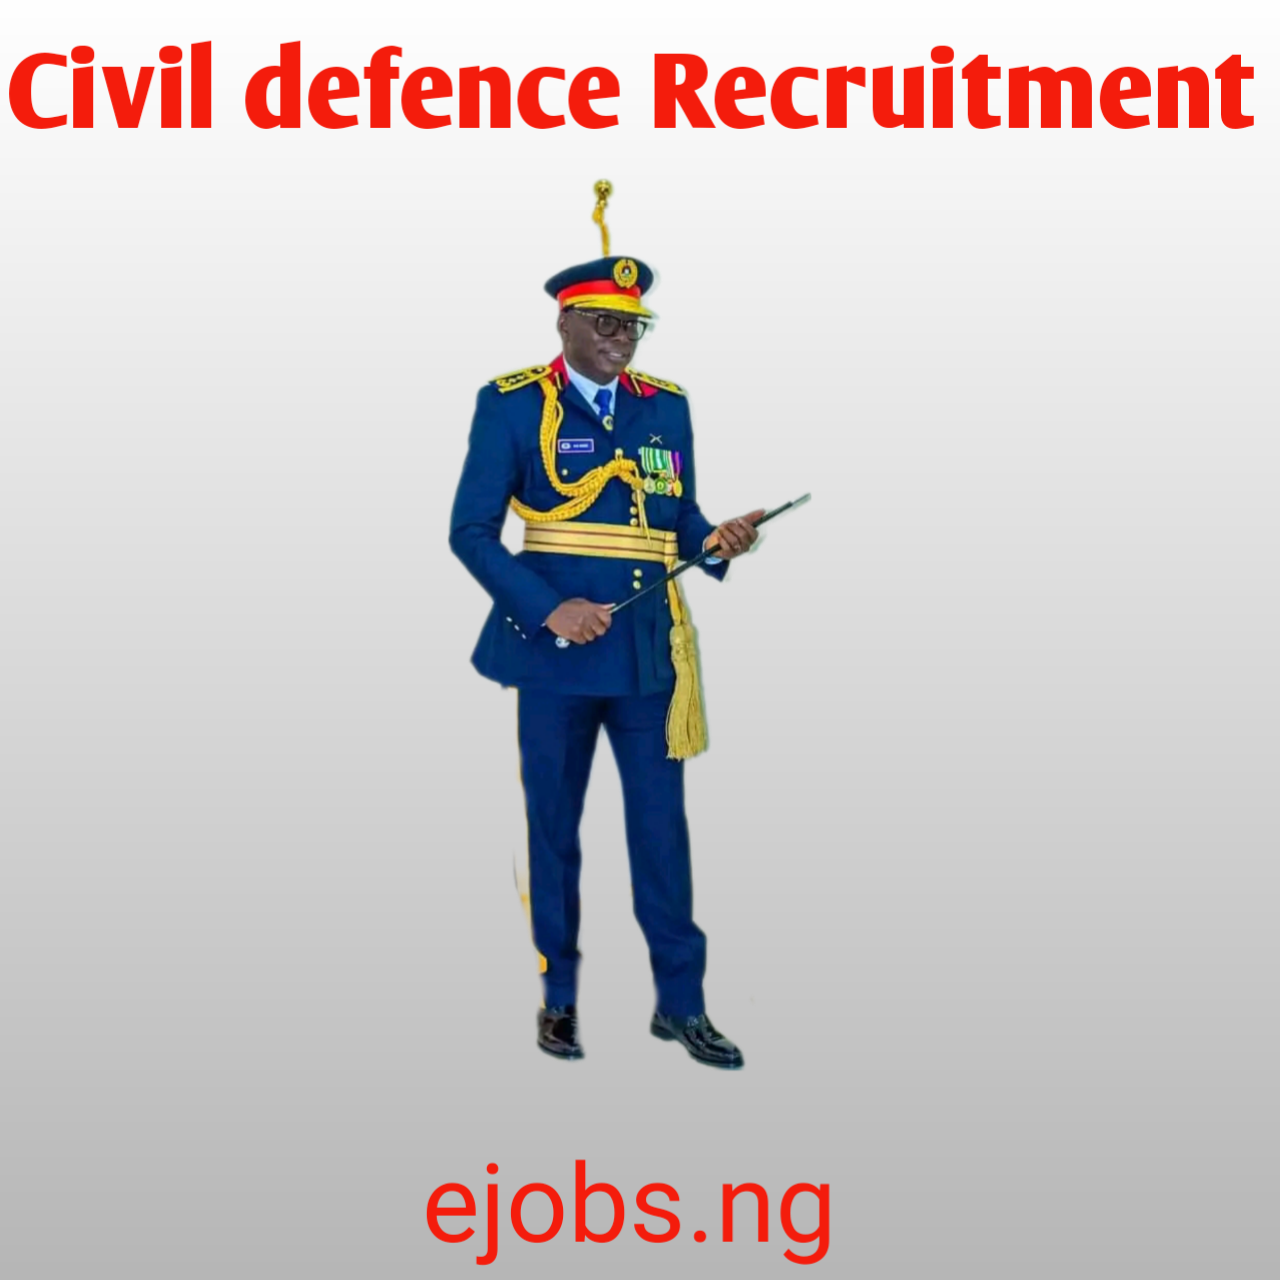 civil defence Recruitment, civil defence Recruitment closing Date, civil defence Recruitment form online, civil defence Recruitment date